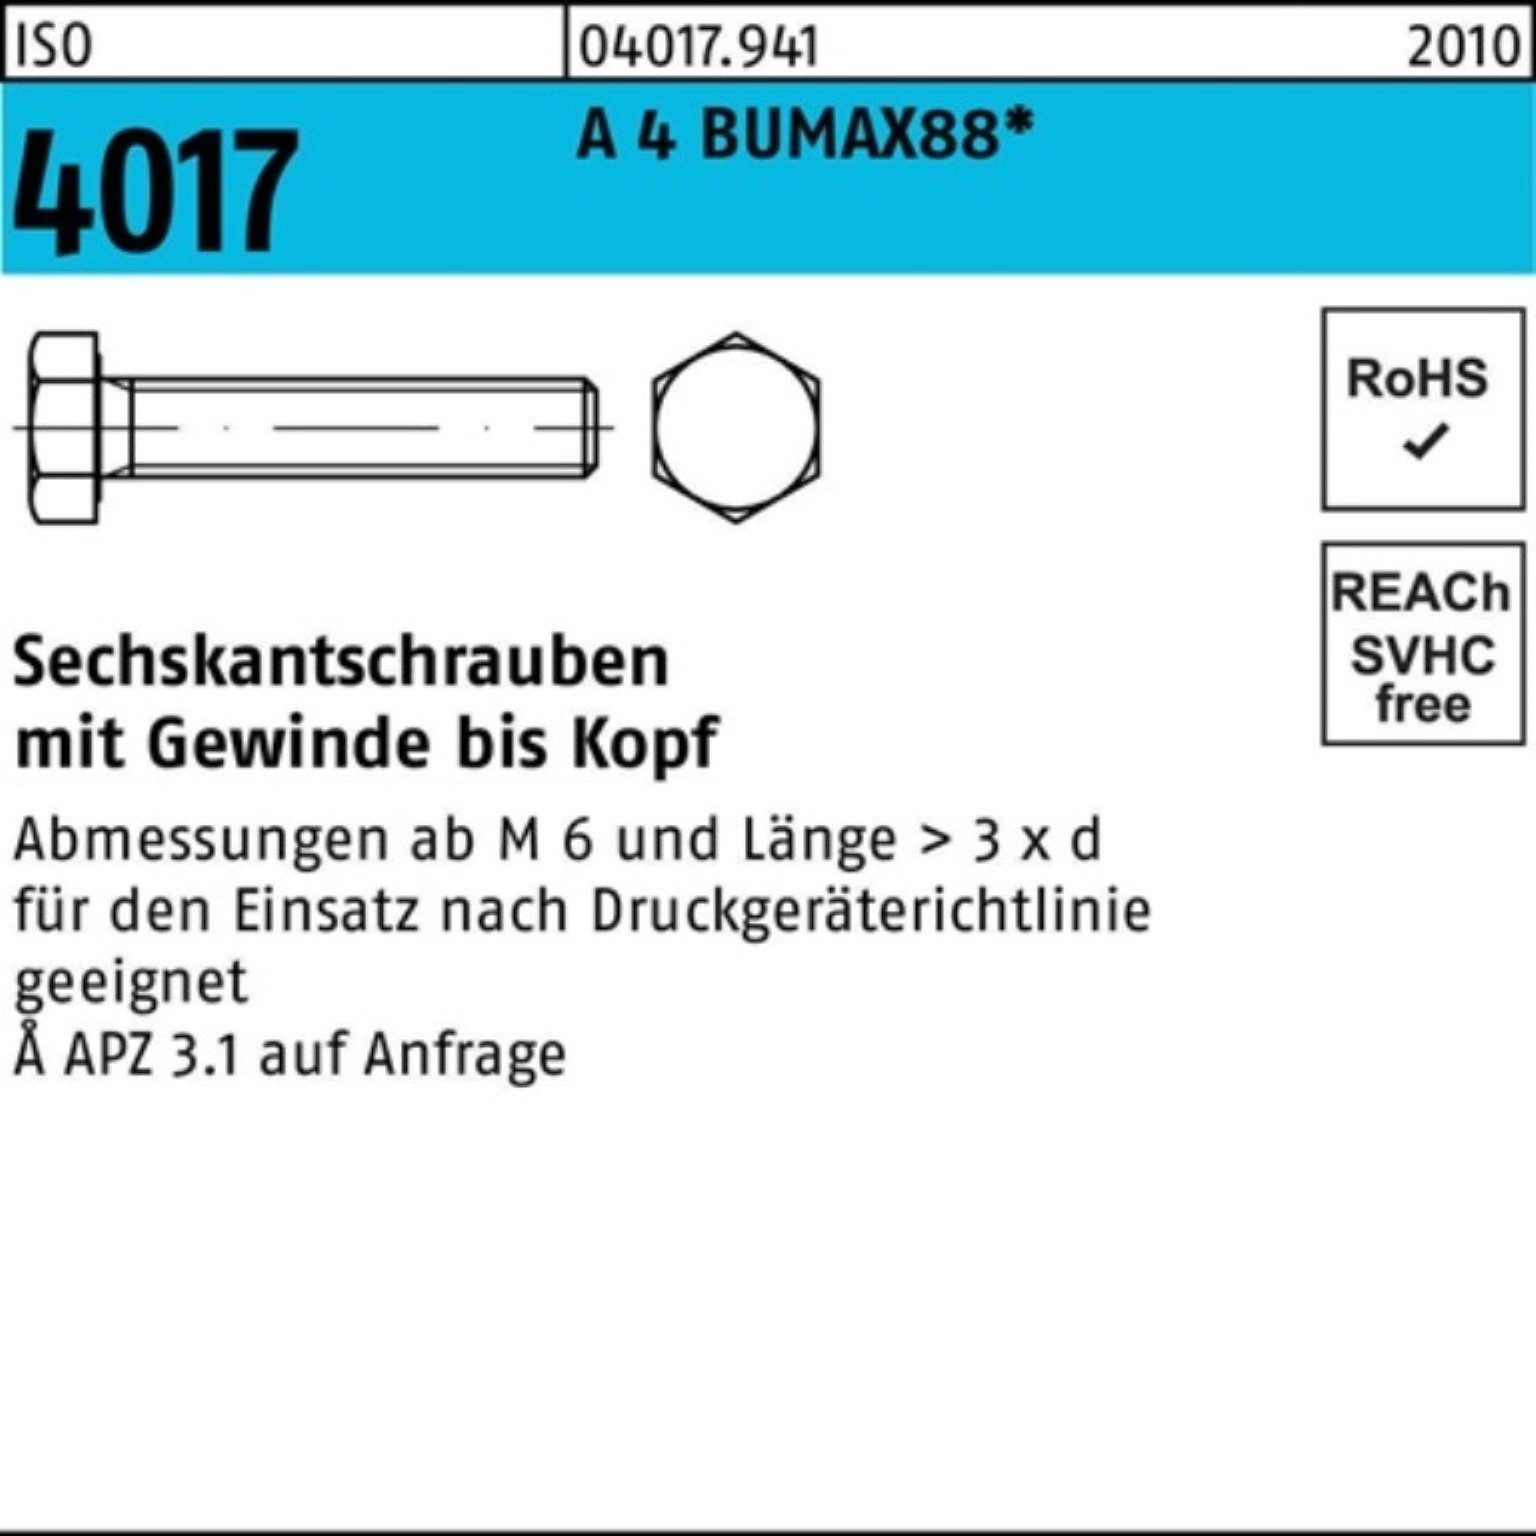 Bufab Sechskantschraube 100er Pack Sechskantschraube ISO 4017 VG M6x 30 A 4 BUMAX88 100 Stück